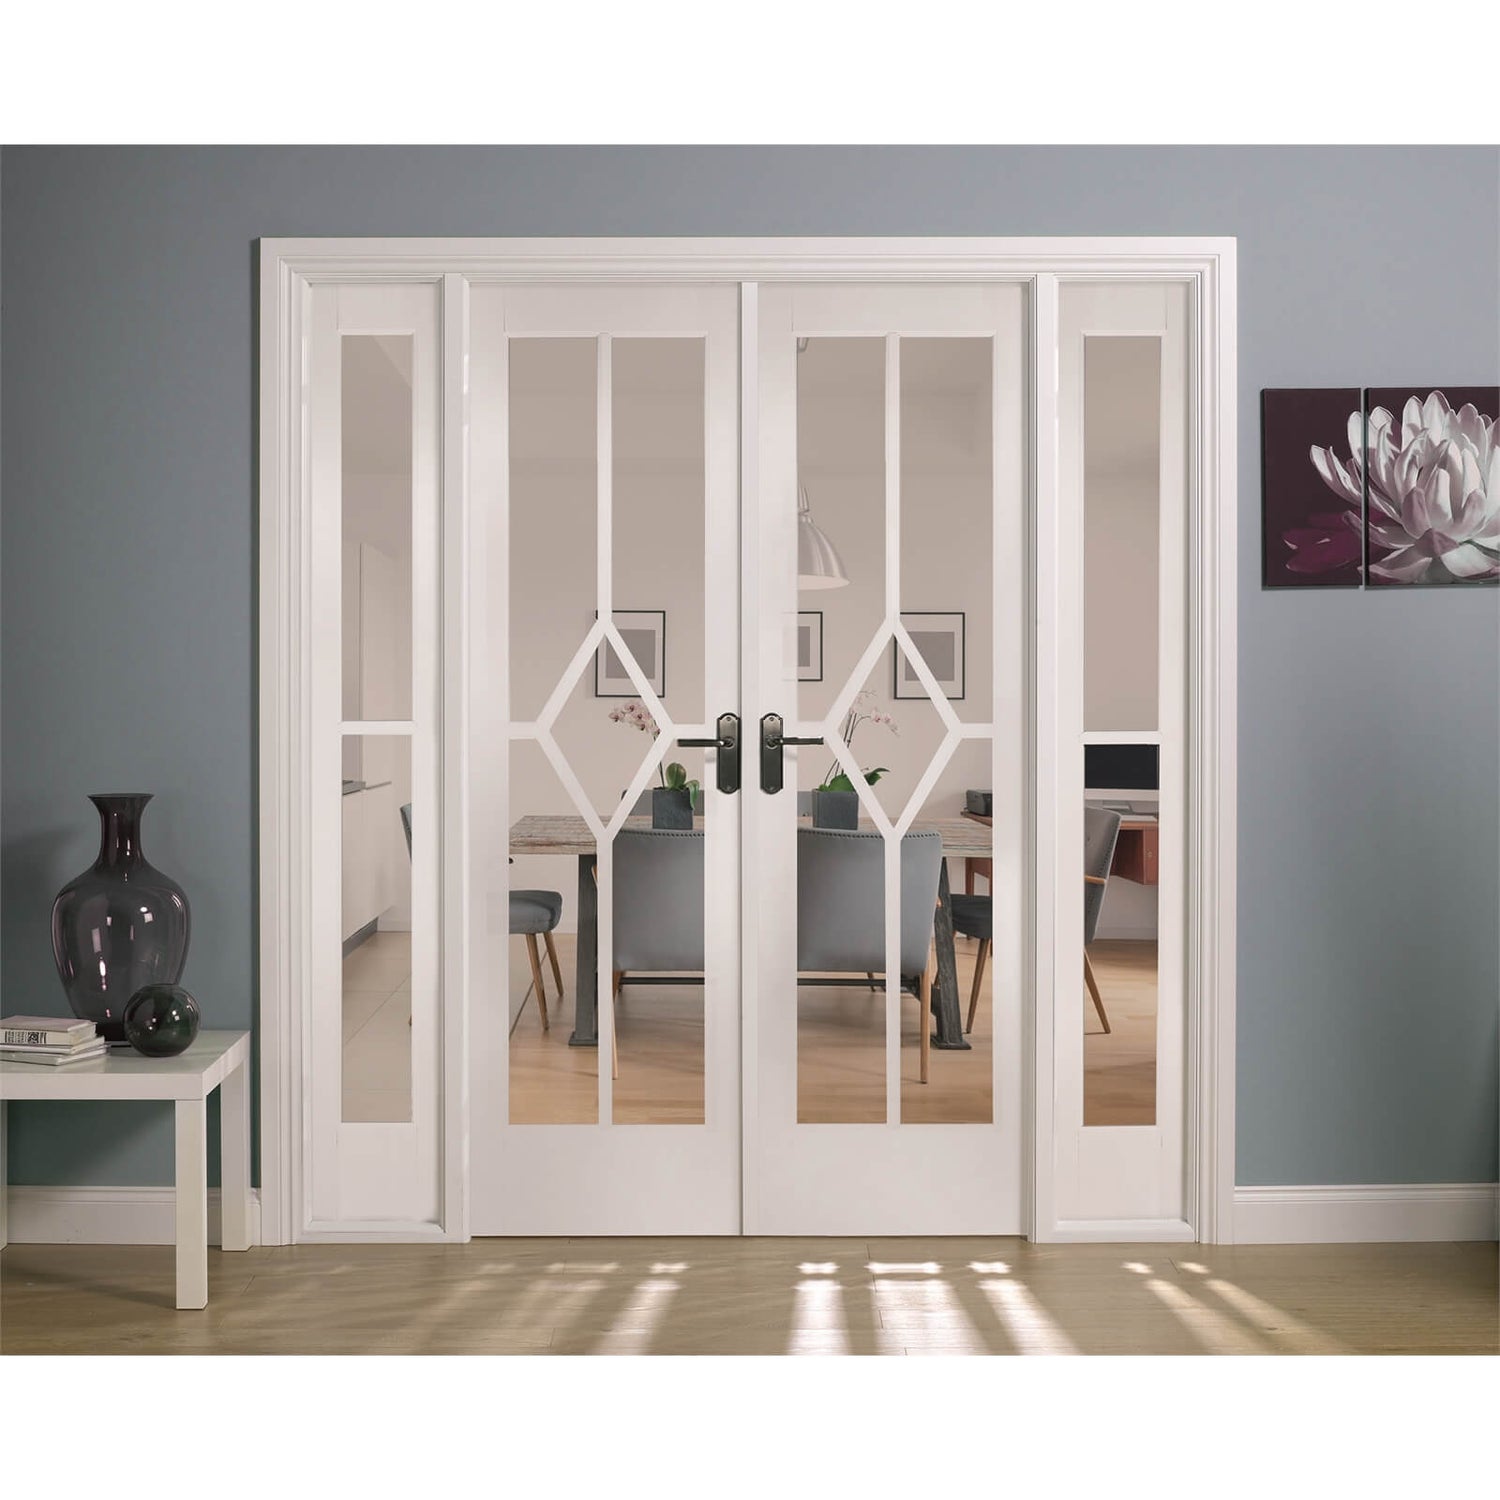 Reims Internal Glazed Primed White Room Divider - 1904 x 2031mm | Homebase